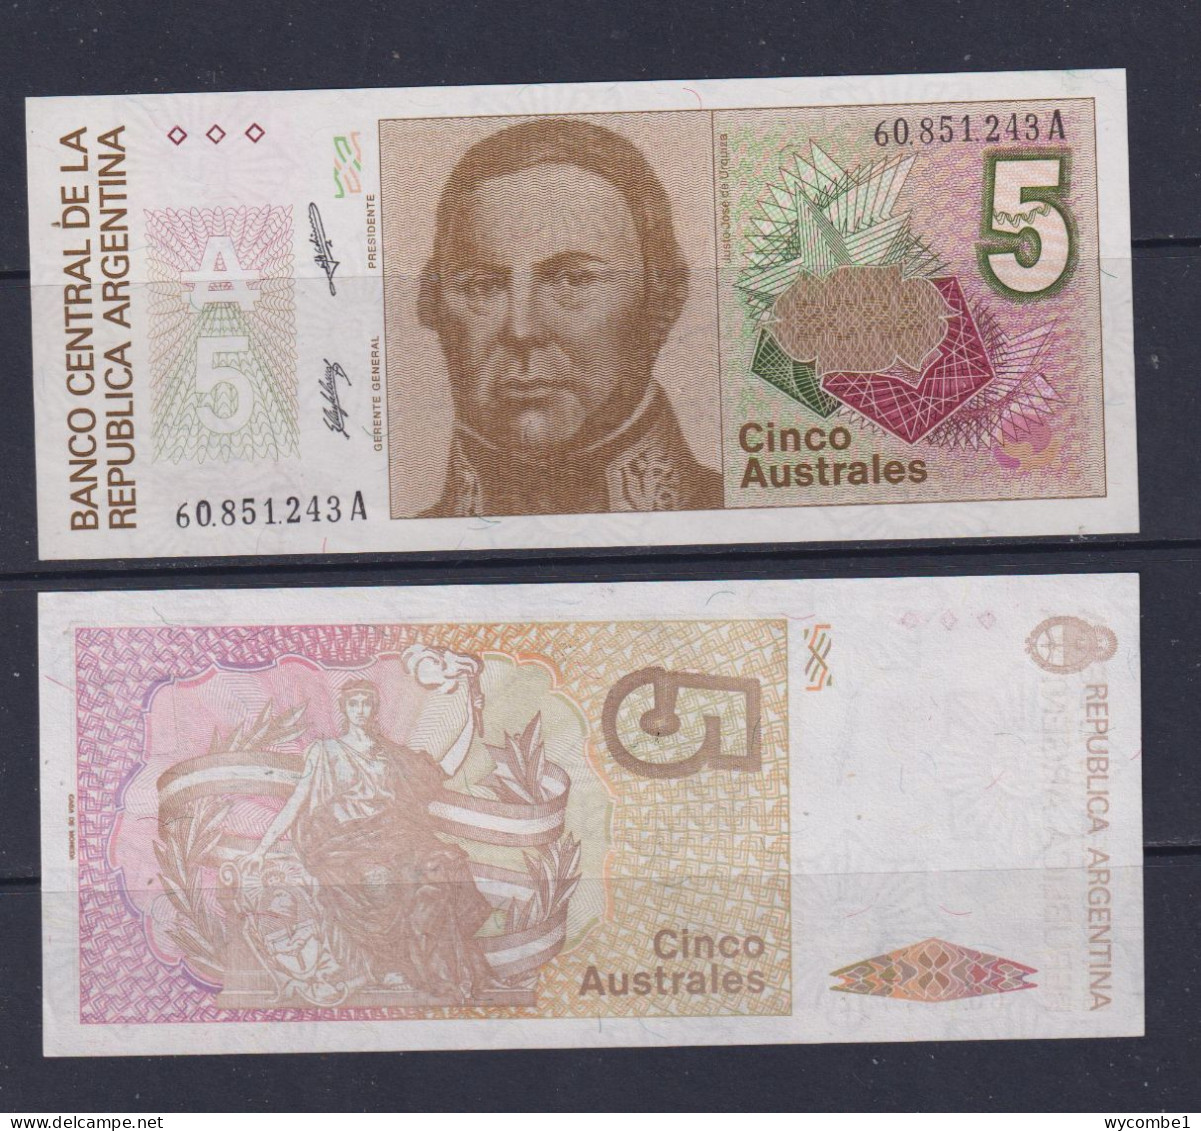 ARGENTINA  -  1985-89 5 Australes  UNC/aUNC  Banknote - Argentinië